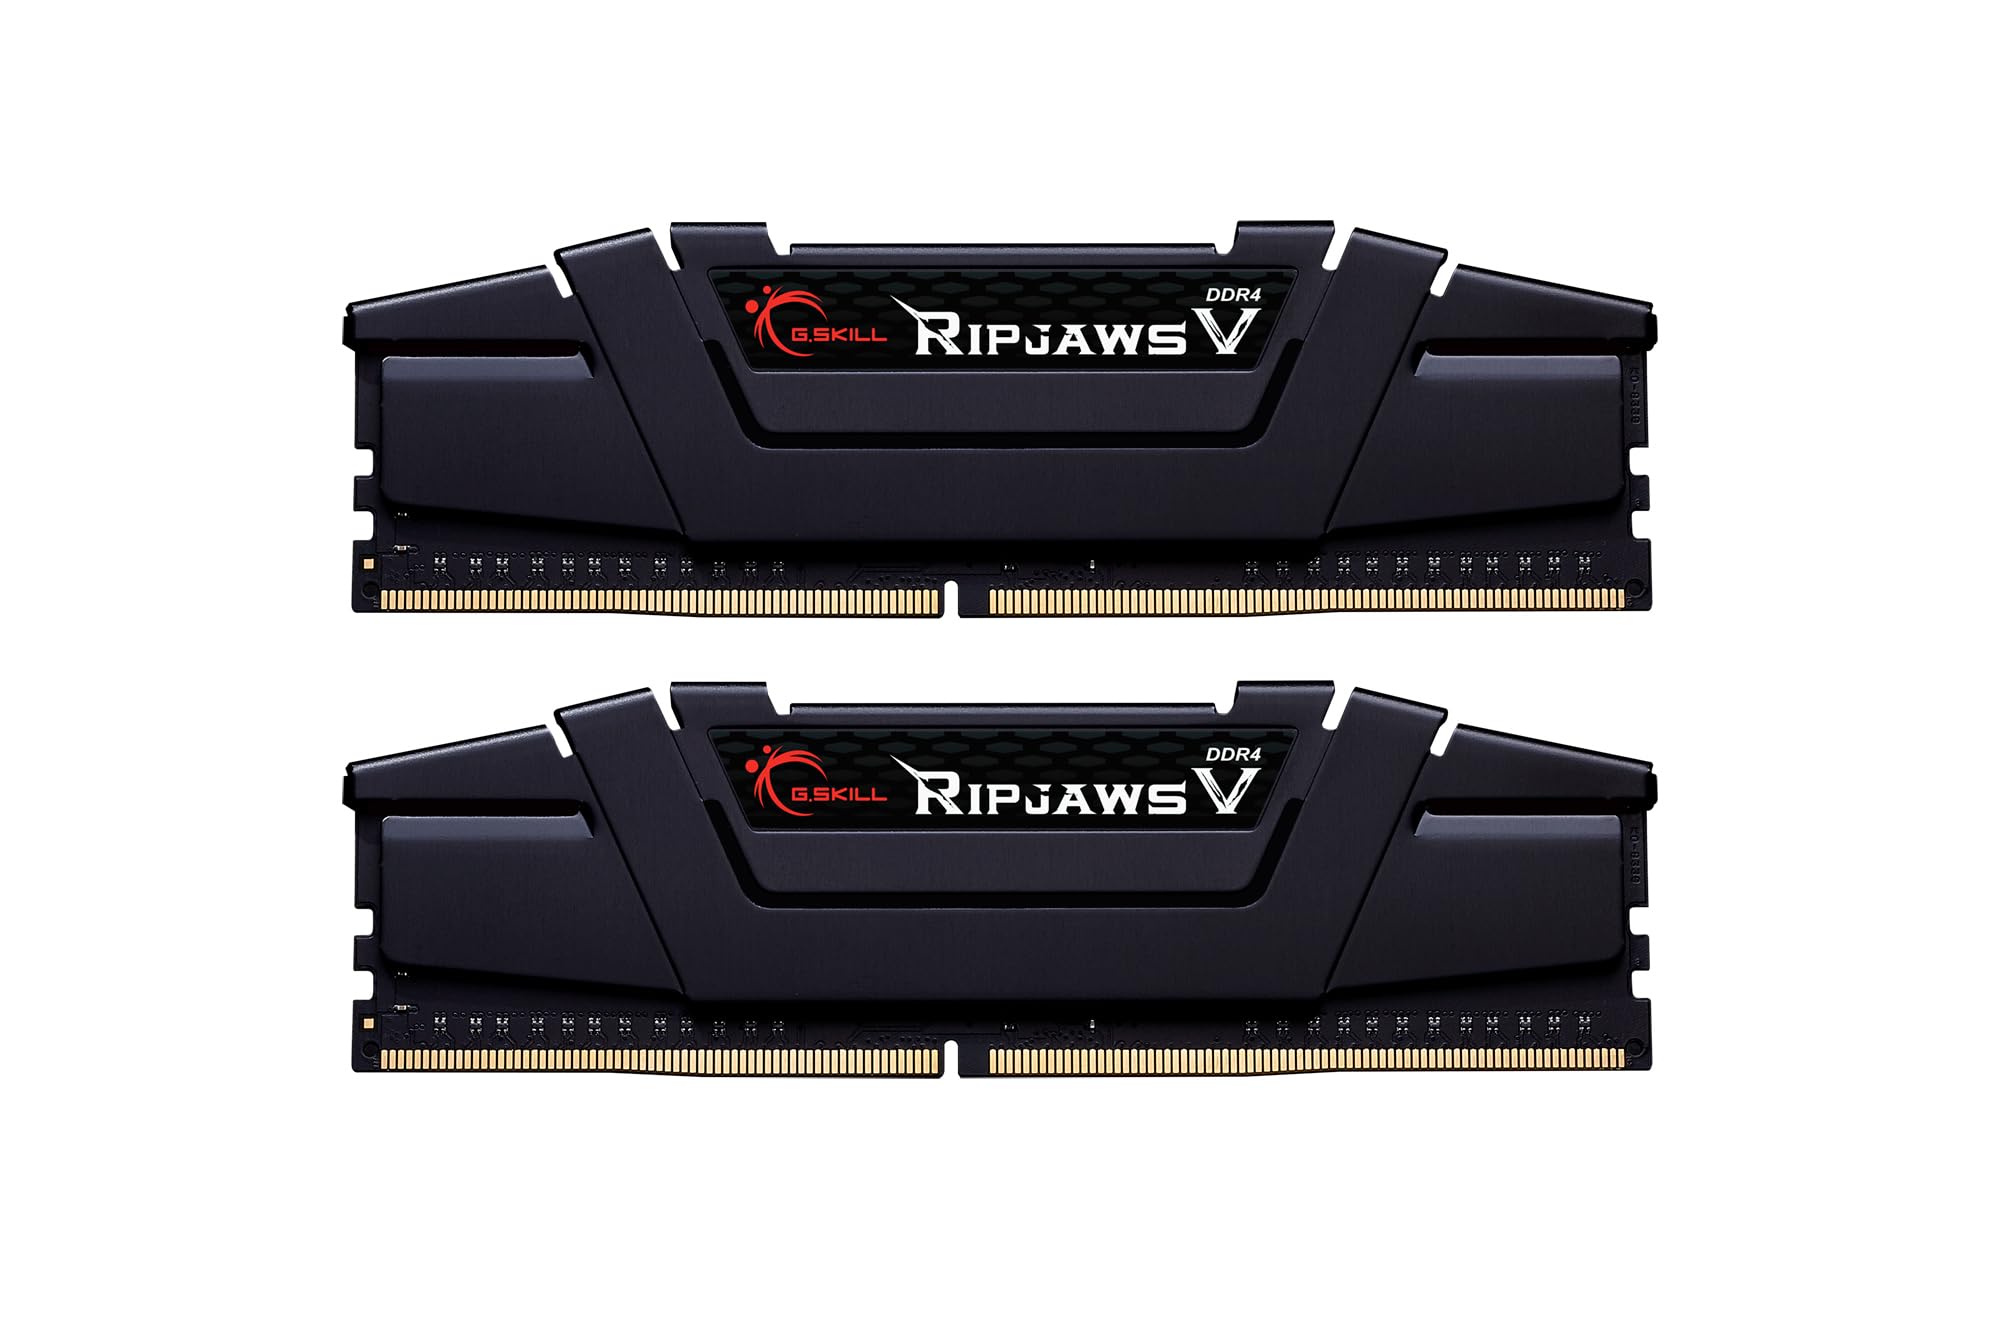 G.SKILL Ripjaws V Series (Intel XMP) DDR4 RAM 32GB (1x32GB) 3200MT/s CL16-18-18-38 1.35V Desktop Computer Memory UDIMM - Black (F4-3200C16S-32GVK)